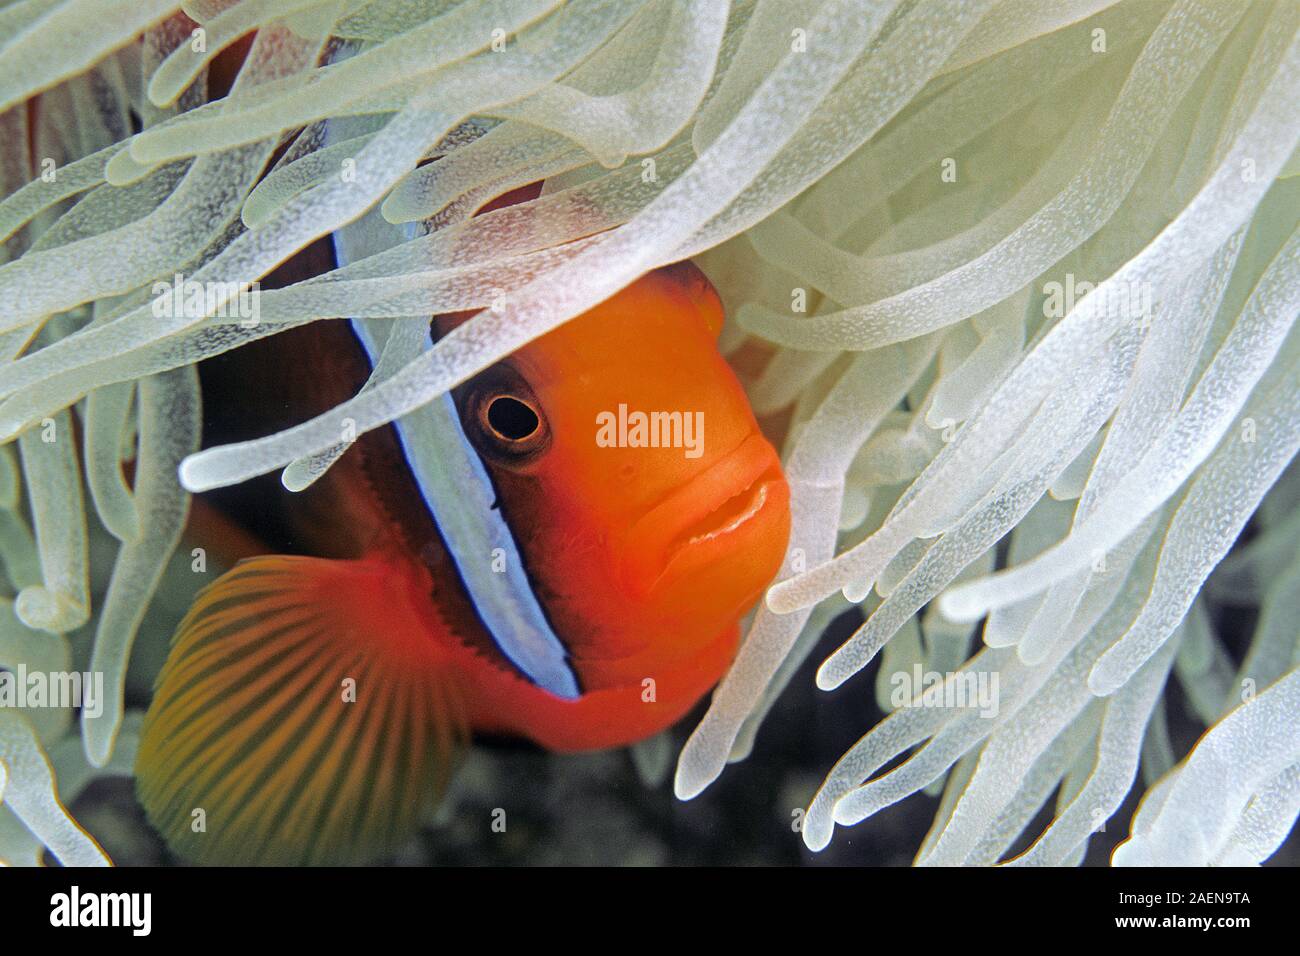 Le poisson clown ou poisson clown (Amphiprion frenatus bridée) caché dans une anémone de mer, Sabang Beach, Mindoro, Philippines Banque D'Images